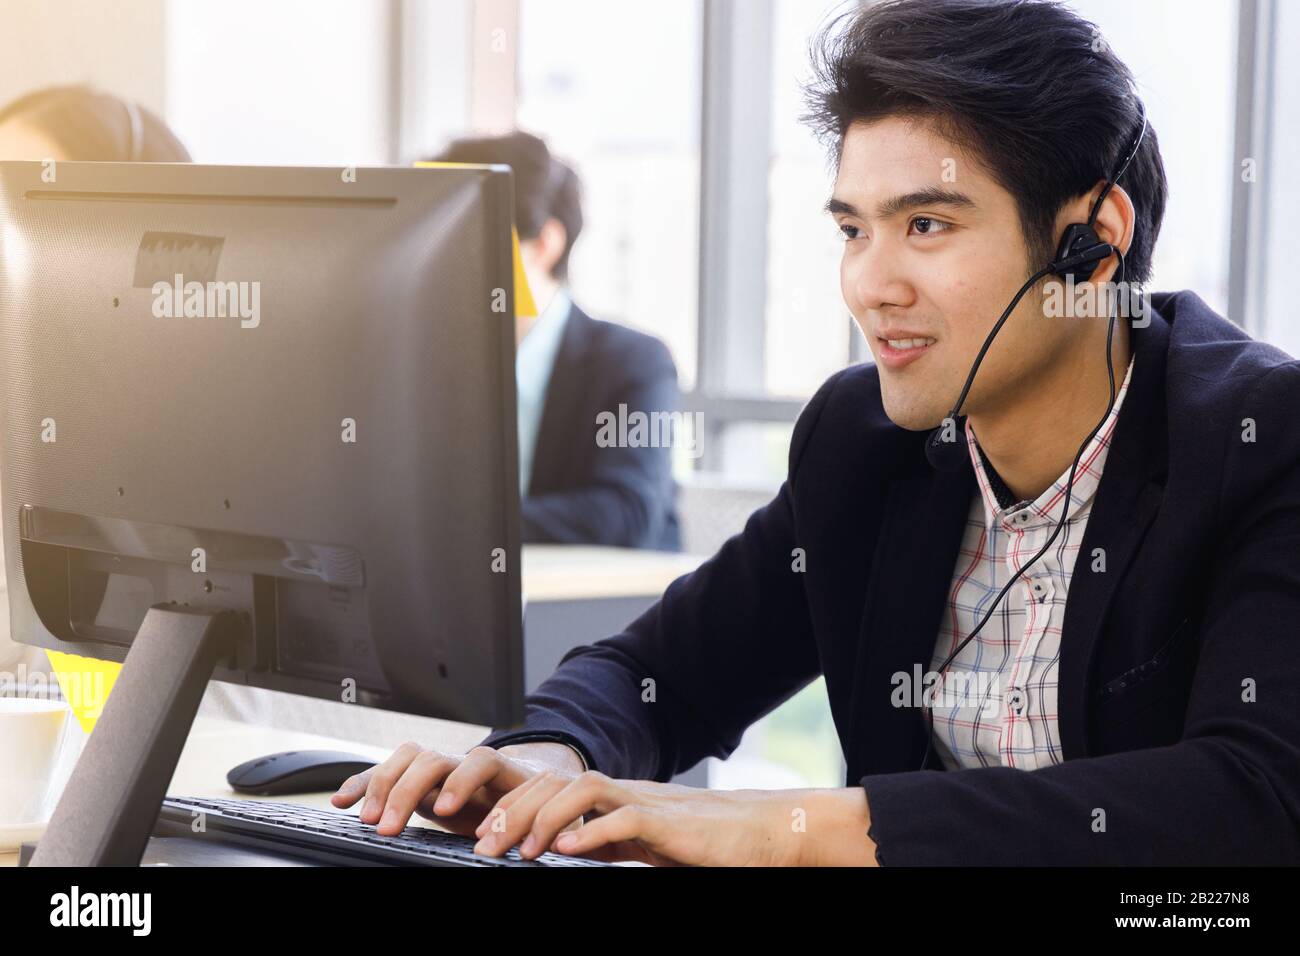 Lächelnder, gutaussehender asiatischer Callcenter-Betreiber verwendet Computer für die Kommunikation mit dem Kunden oder für andere Aufgaben. Stockfoto